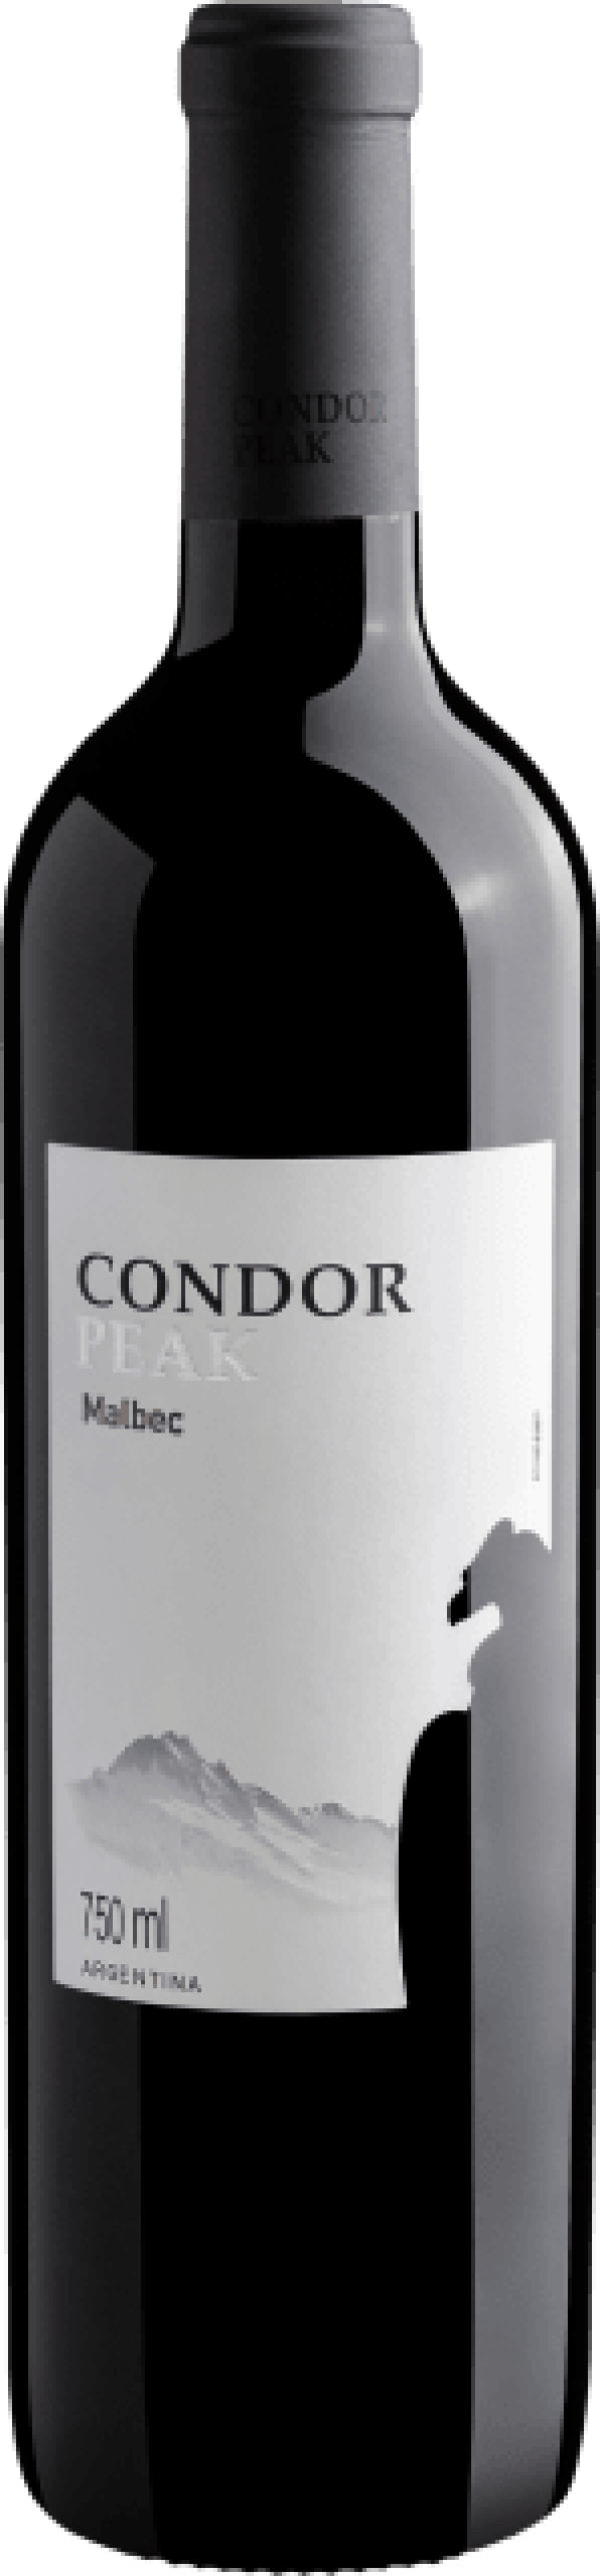 Condor Peak Malbec 2019